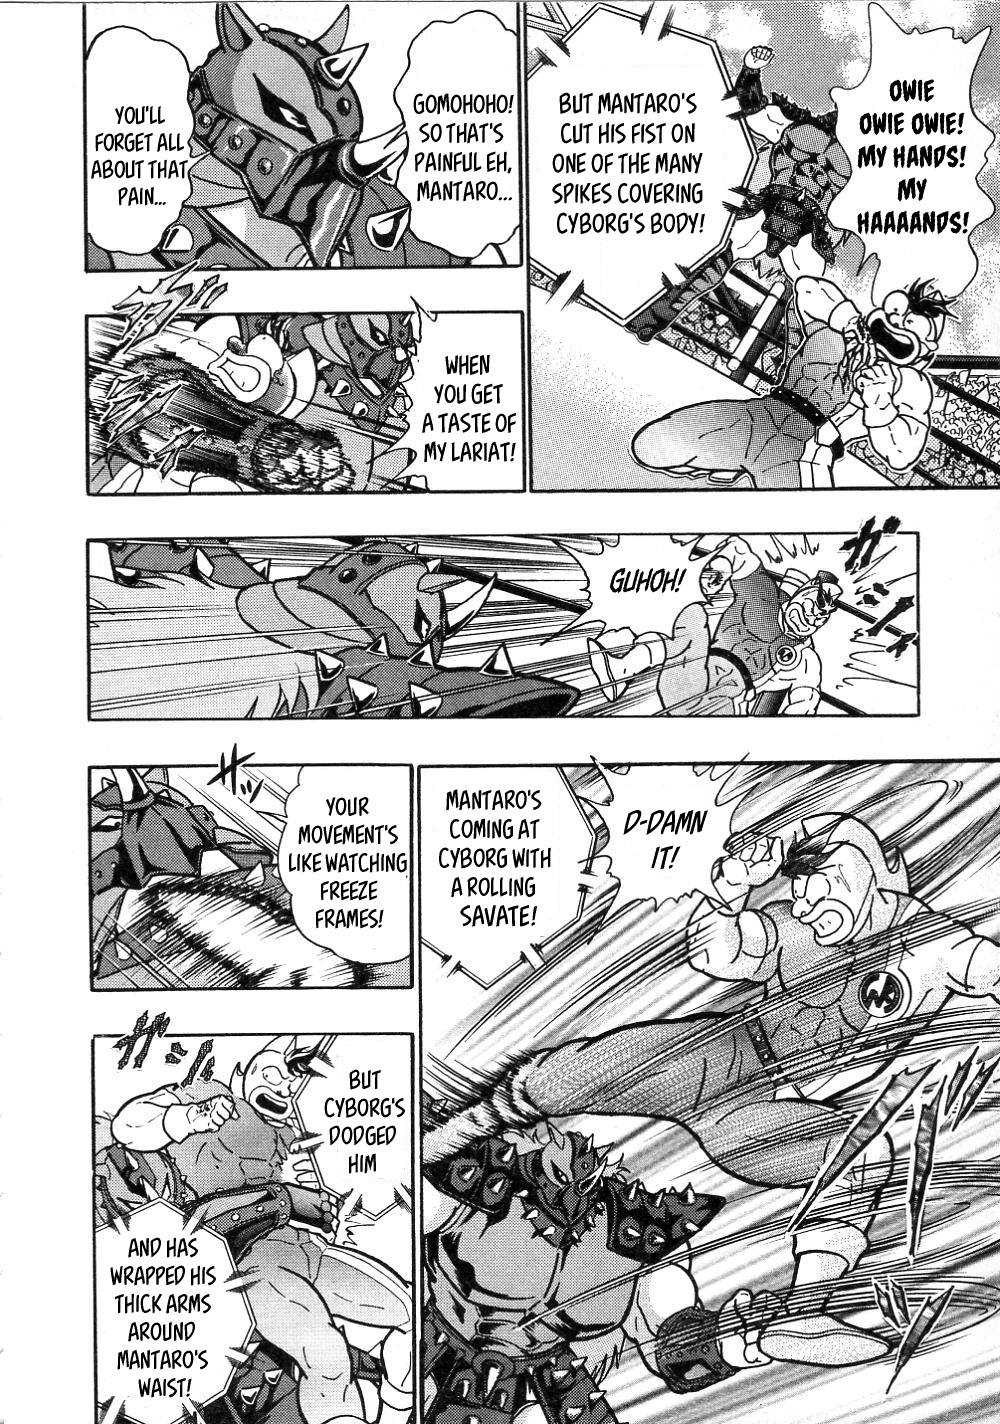 Kinnikuman Nisei ~All Out Chojin Assault~ Vol. 1 Ch. 3 Fated Decisive Match! Defeat the Cyborg!